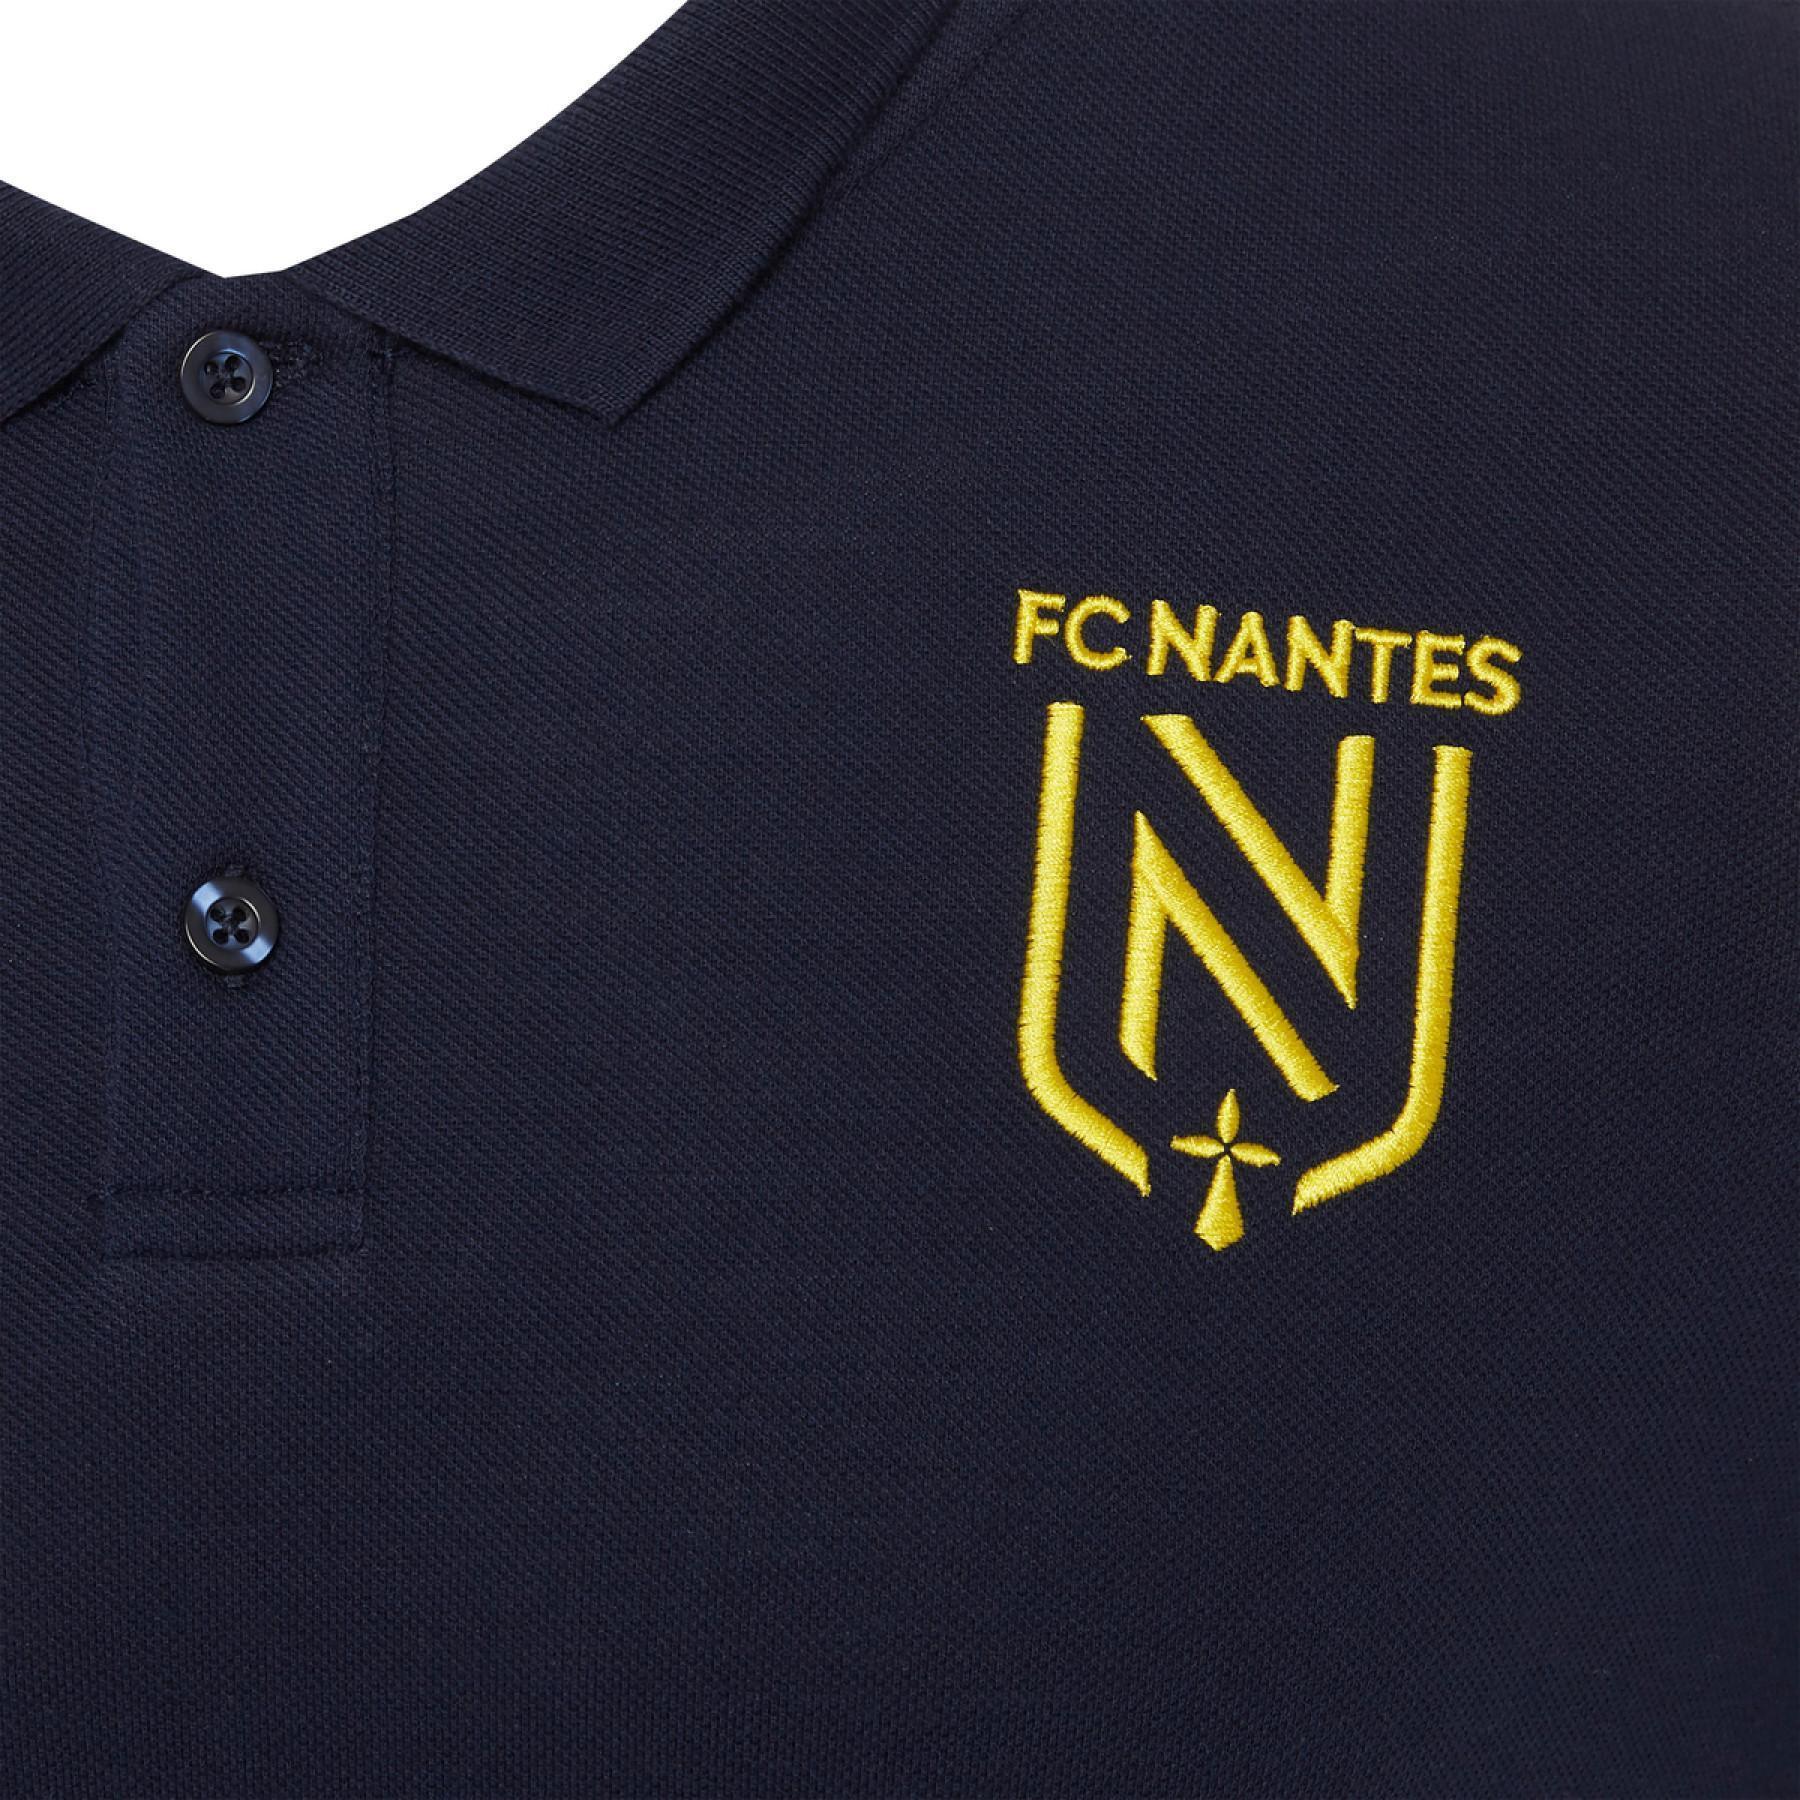 Polospelare FC Nantes 2020/21